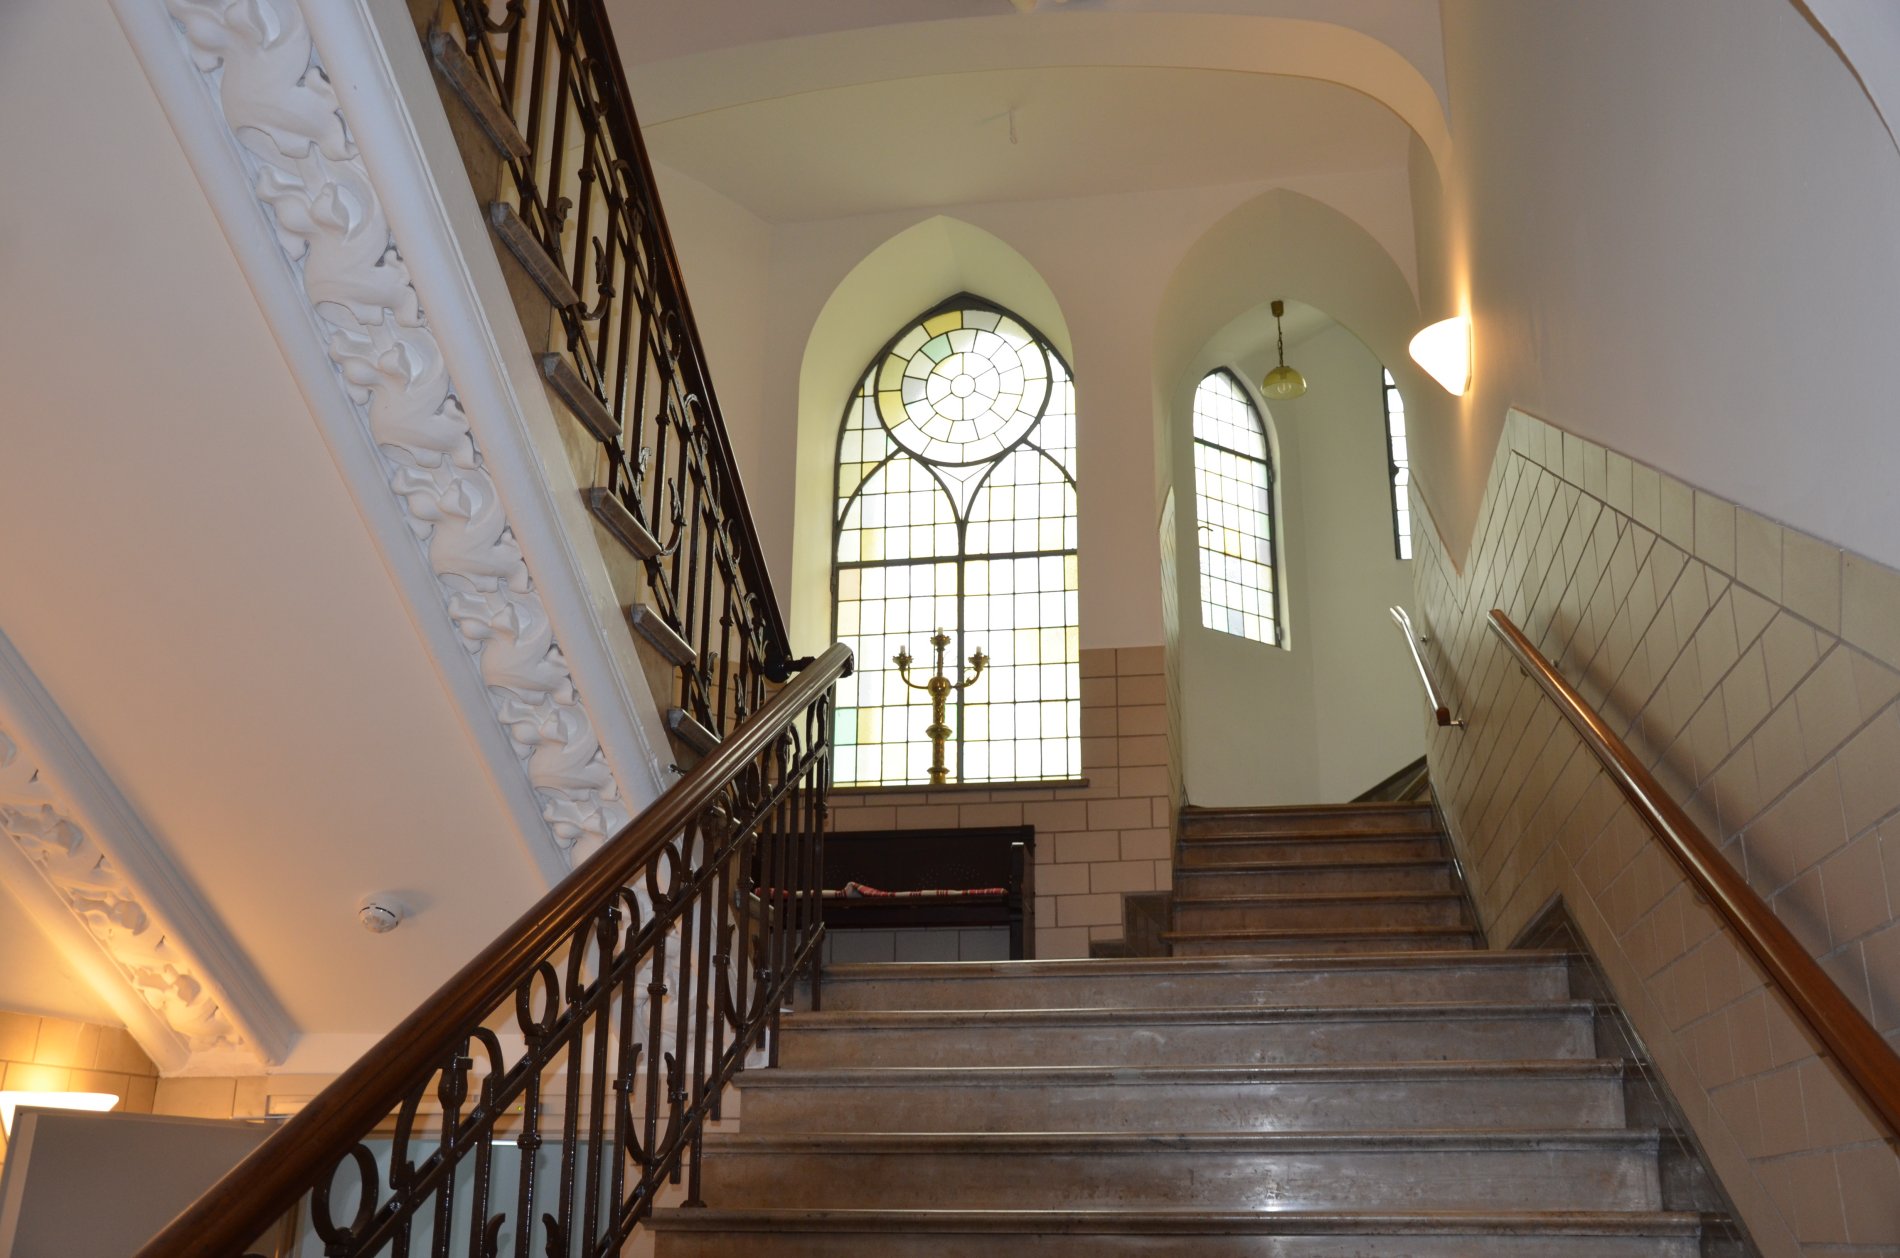 Treppenhaus in der schwedischen Kirche an den Landungsbrücken - Aufgang zum Kirchensaal